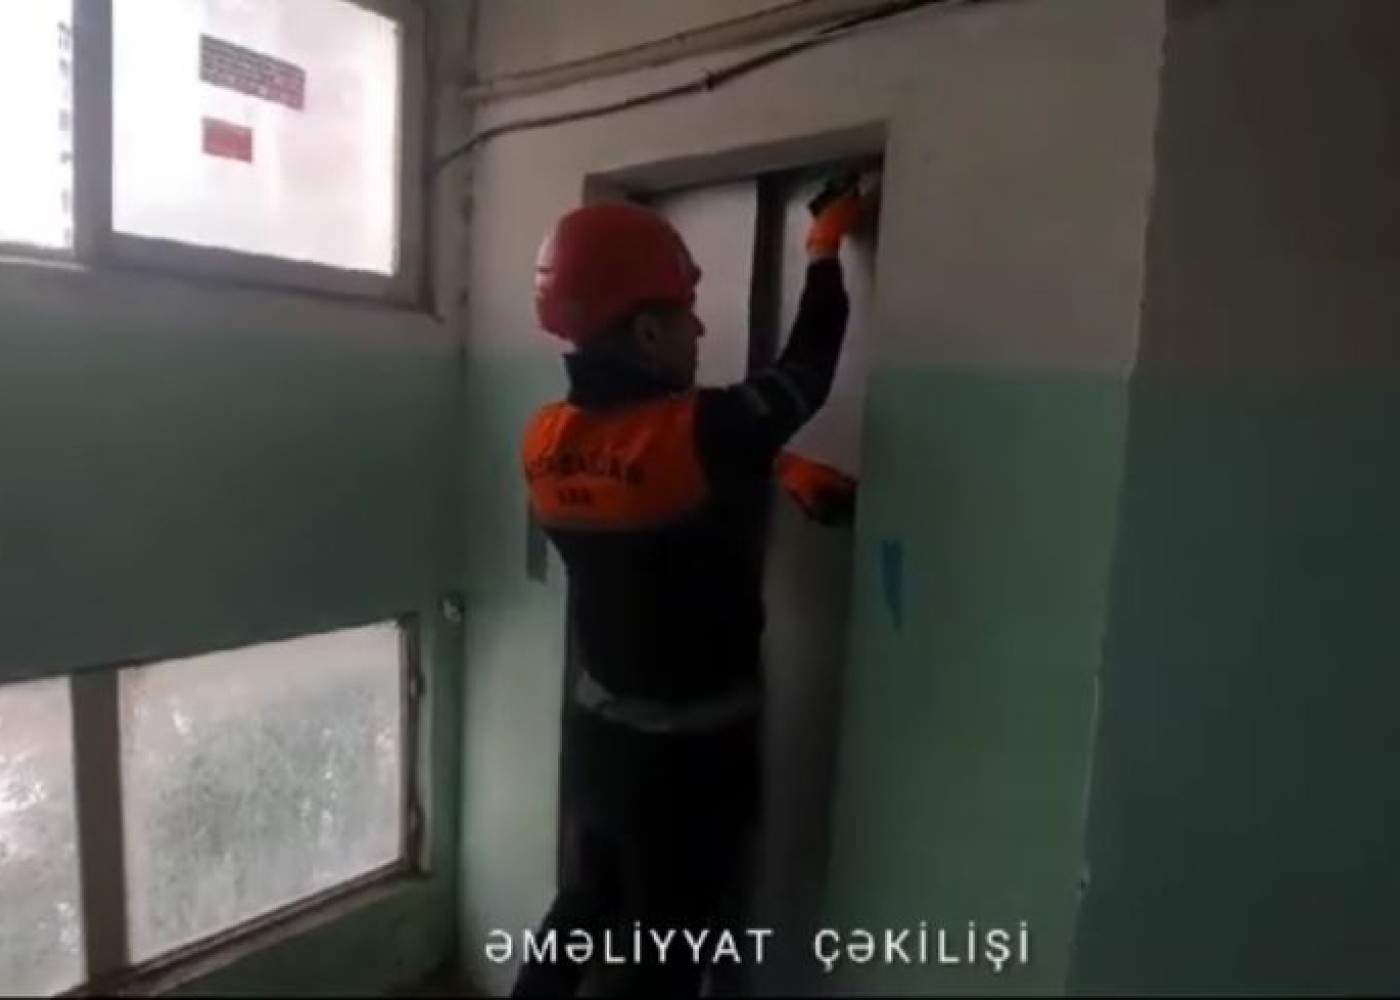 Liftdə qalan şəxs xilasEDİLDİ